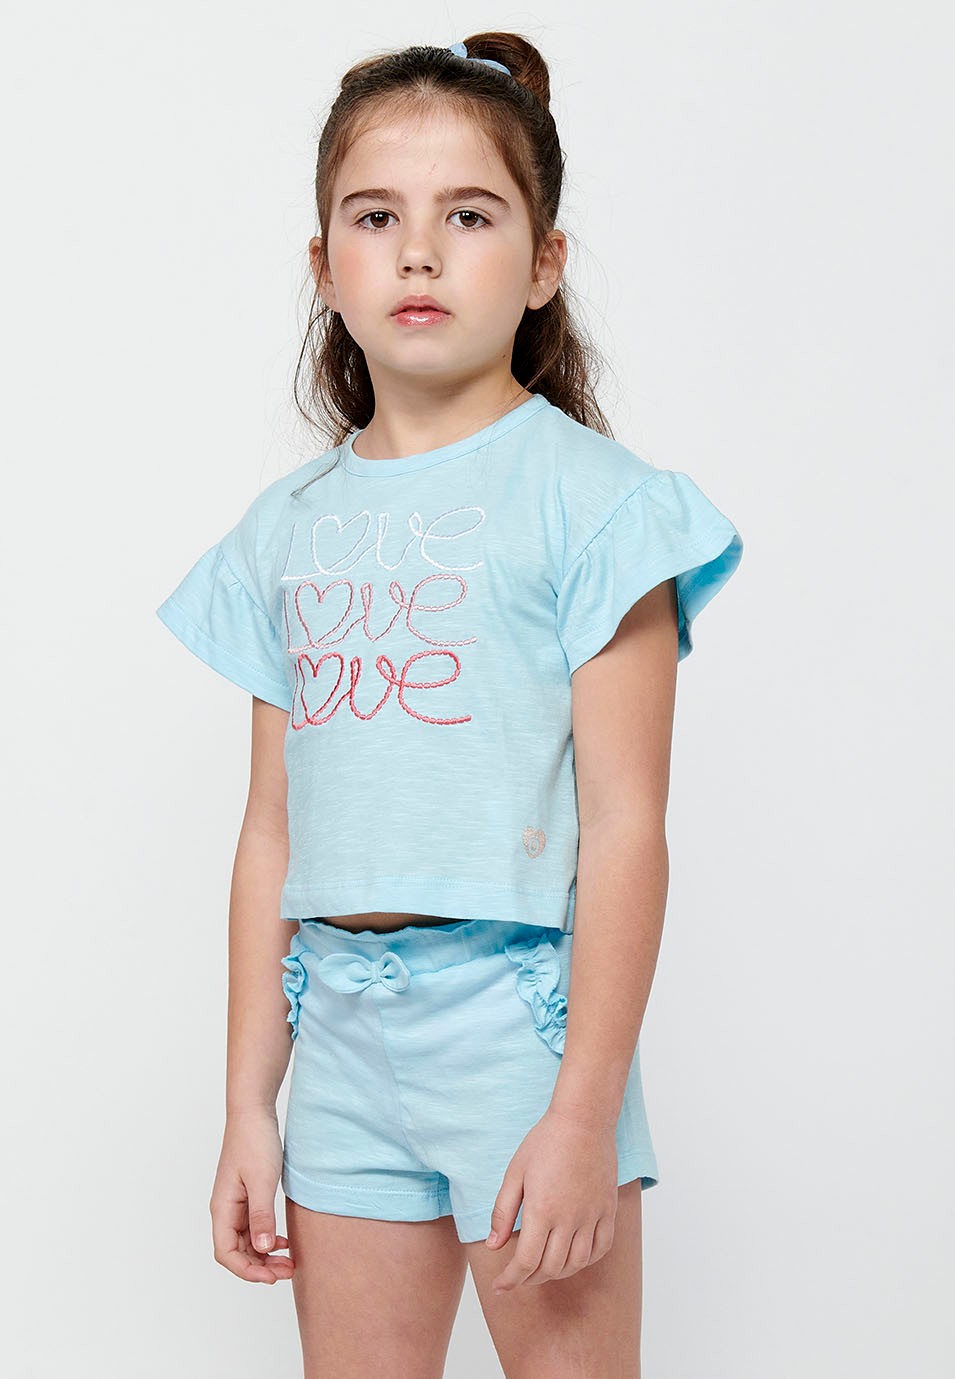 Conjunt de samarreta i pantalons. Samarreta de màniga curta amb estampat davanter i Pantalons curts amb cintura engomada de Color Blau per a Nena 5